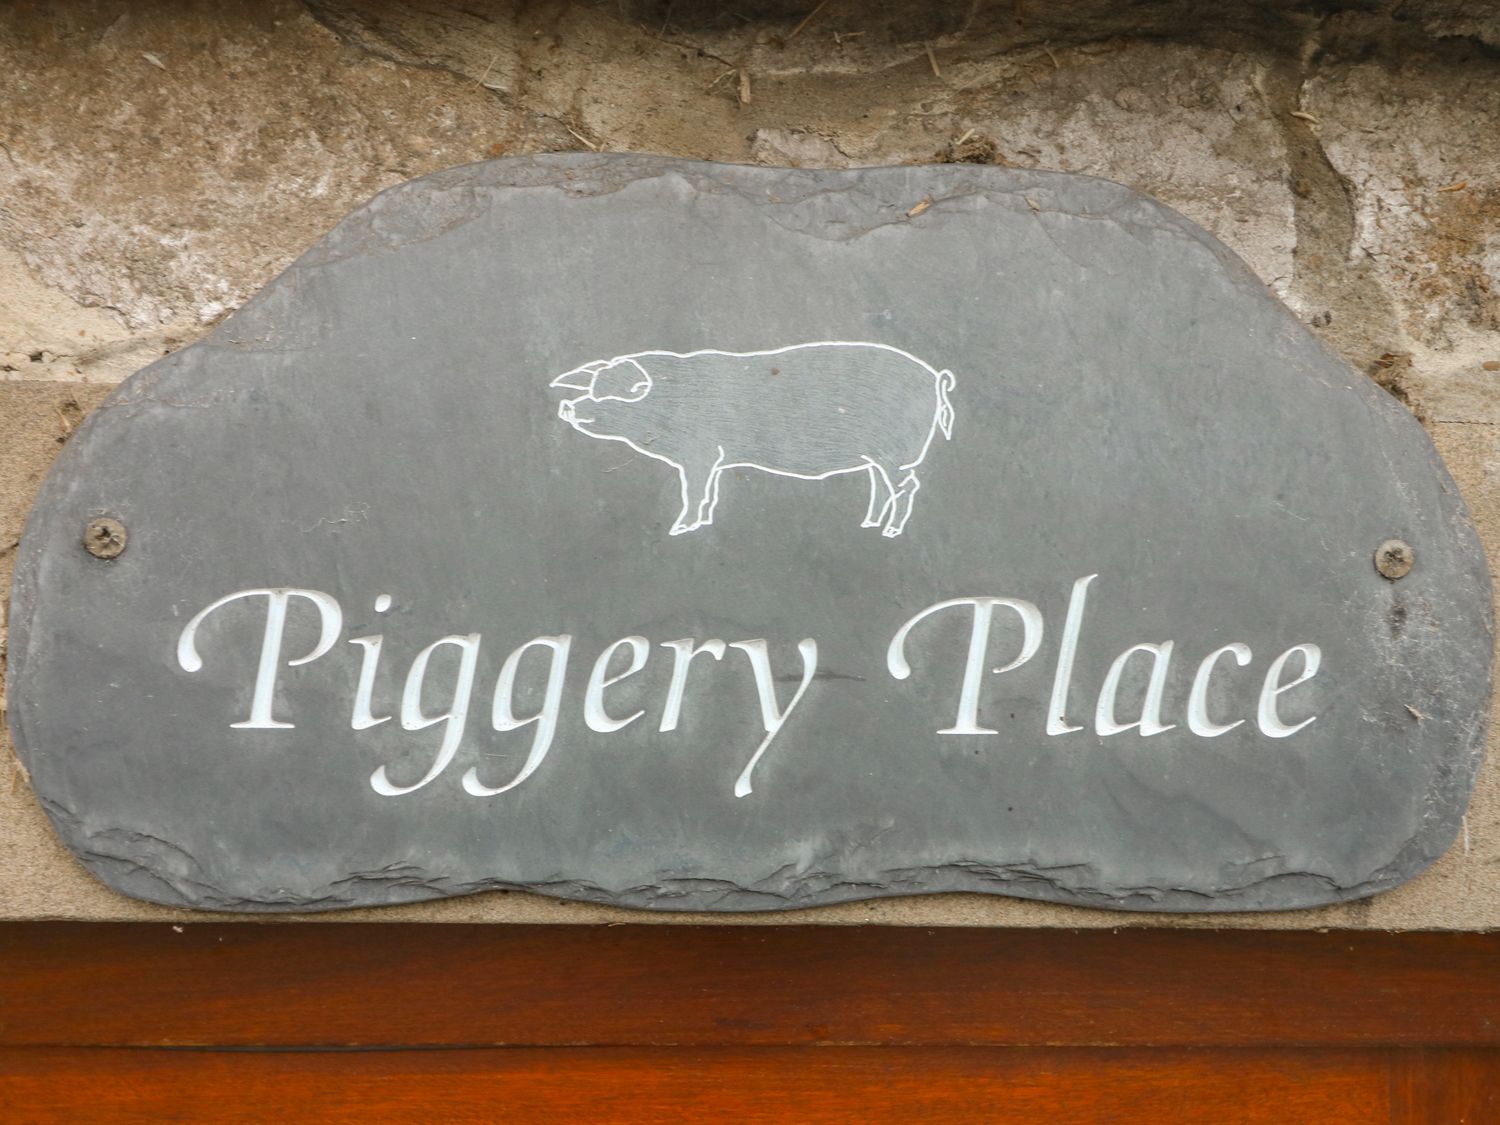 Piggery Place, Peak District National Park